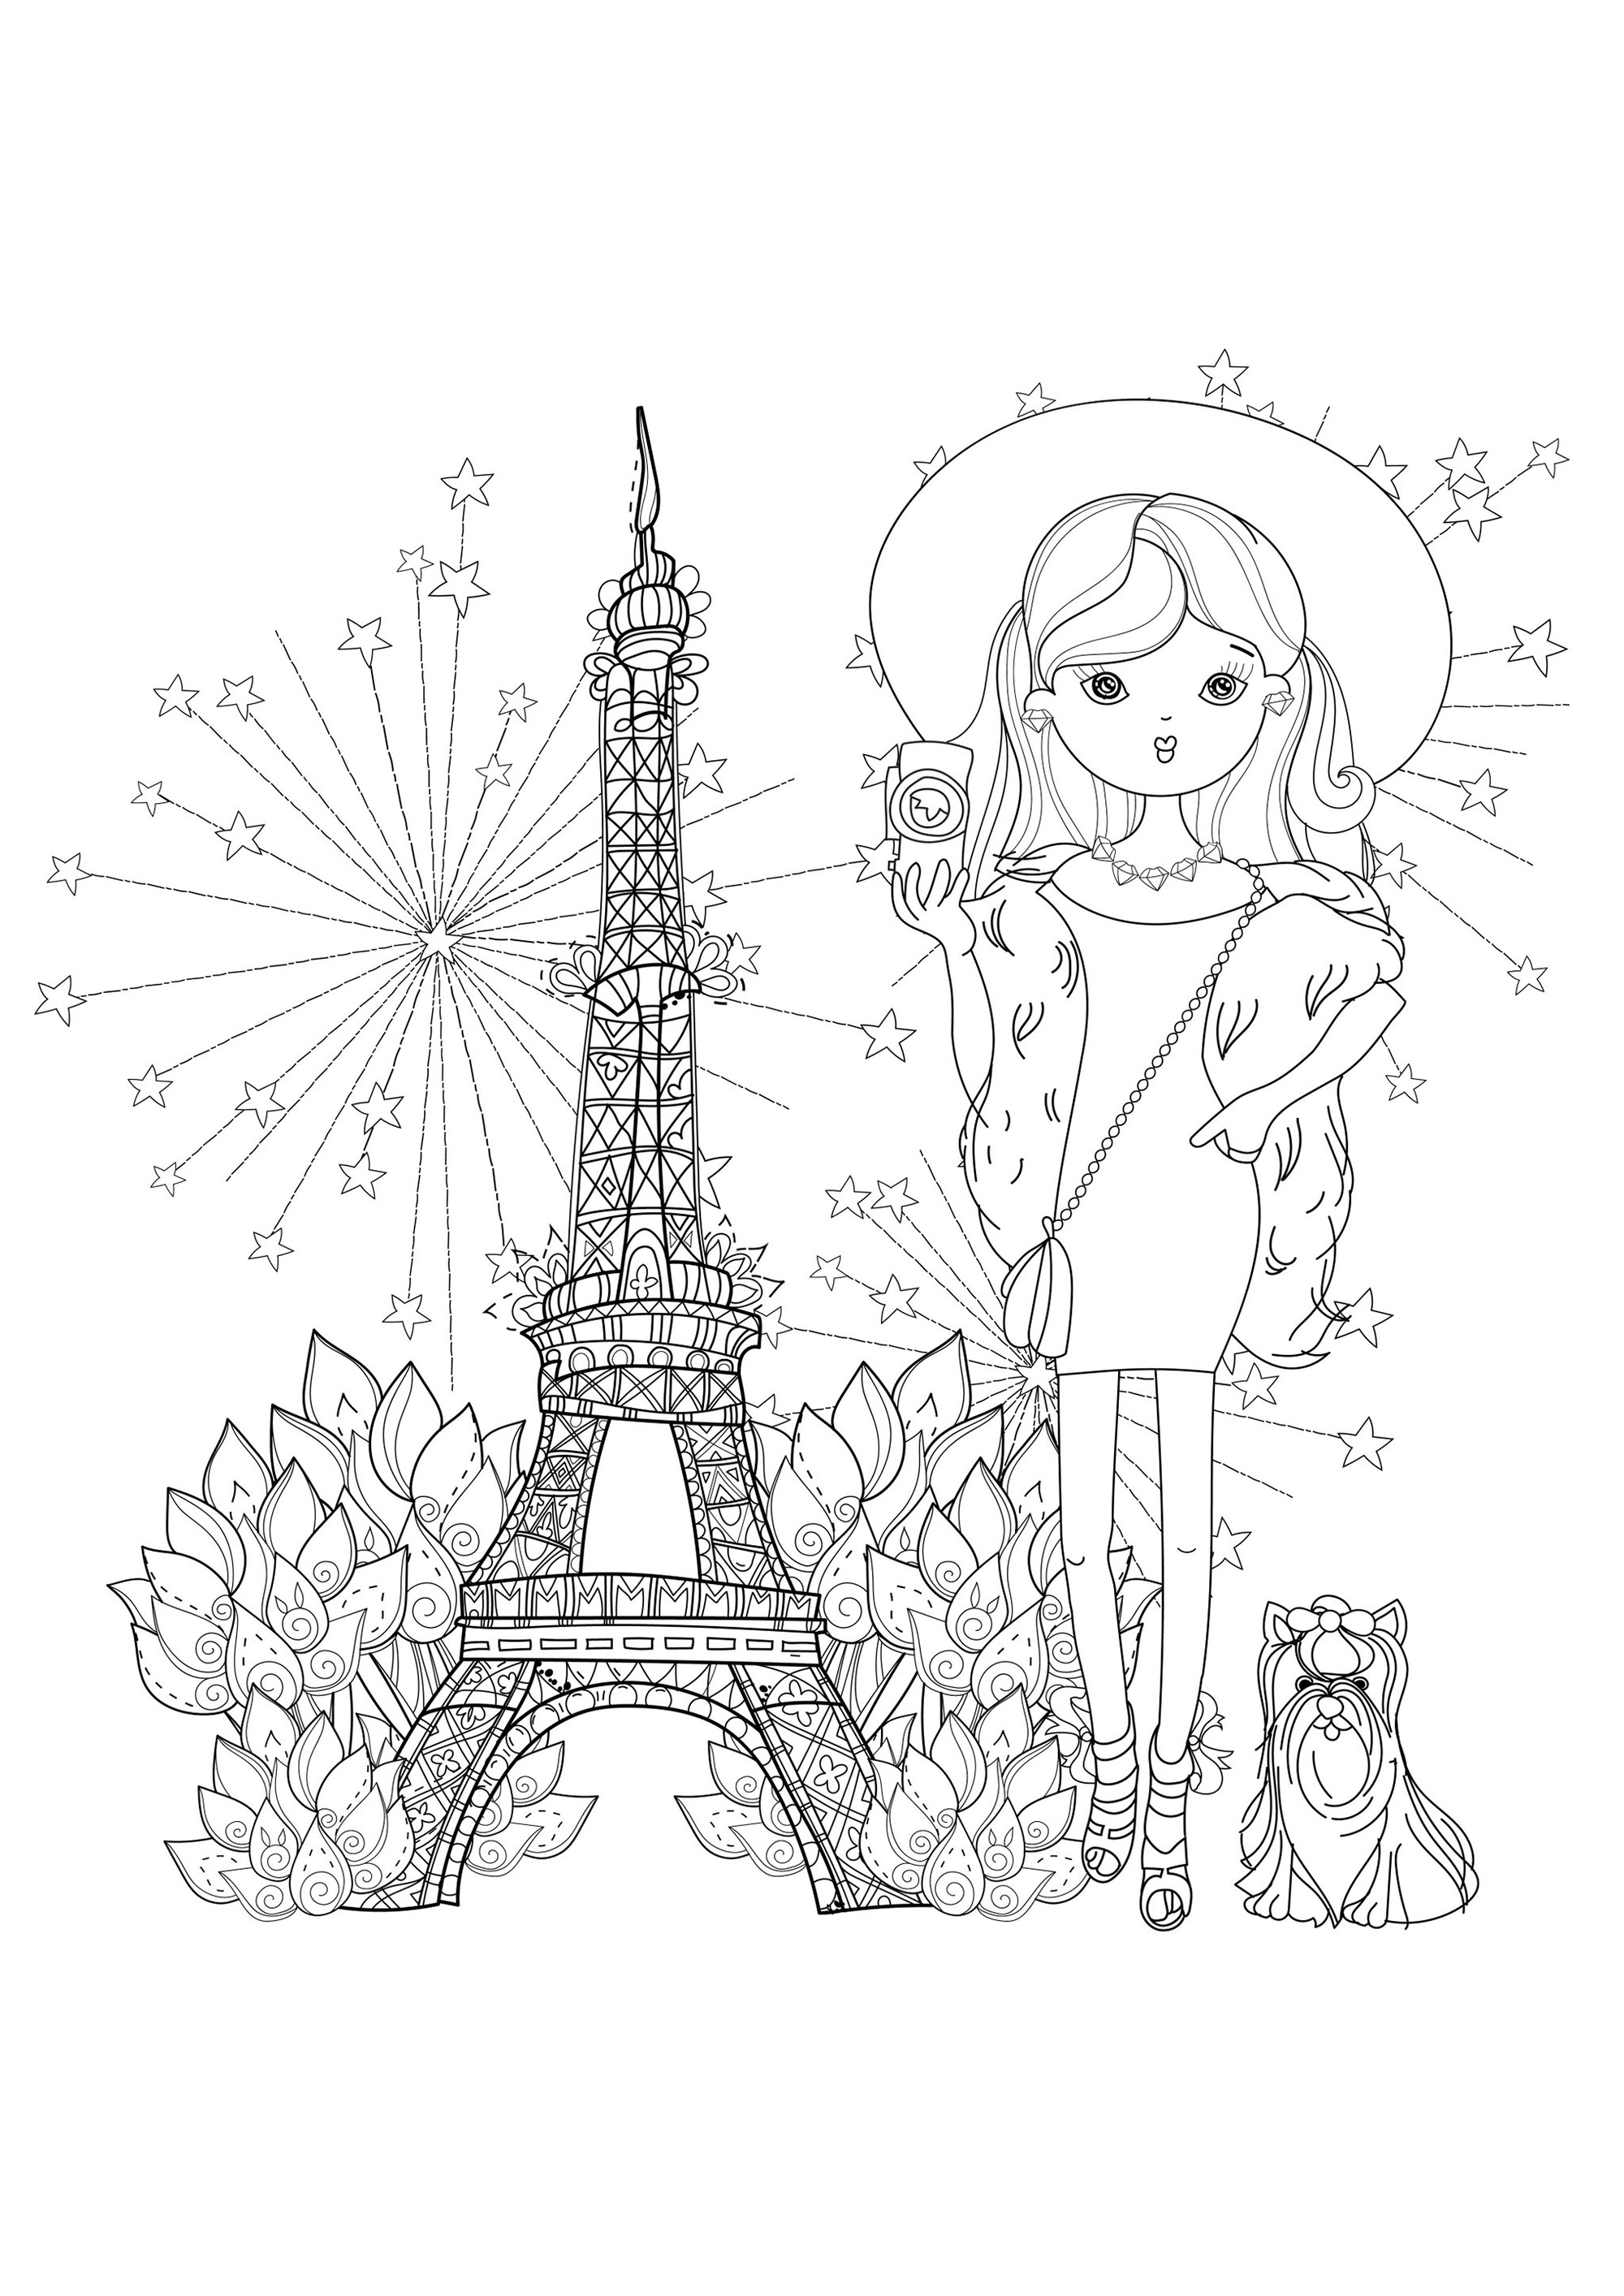 Junge Reisende mit ihrem kleinen Hund und dem Eiffelturm. Der 1889 für die Weltausstellung errichtete Eiffelturm (Tour Eiffel) ist zum wichtigsten Symbol von Paris und sogar von Frankreich geworden, Quelle : 123rf   Künstler : Yazzik